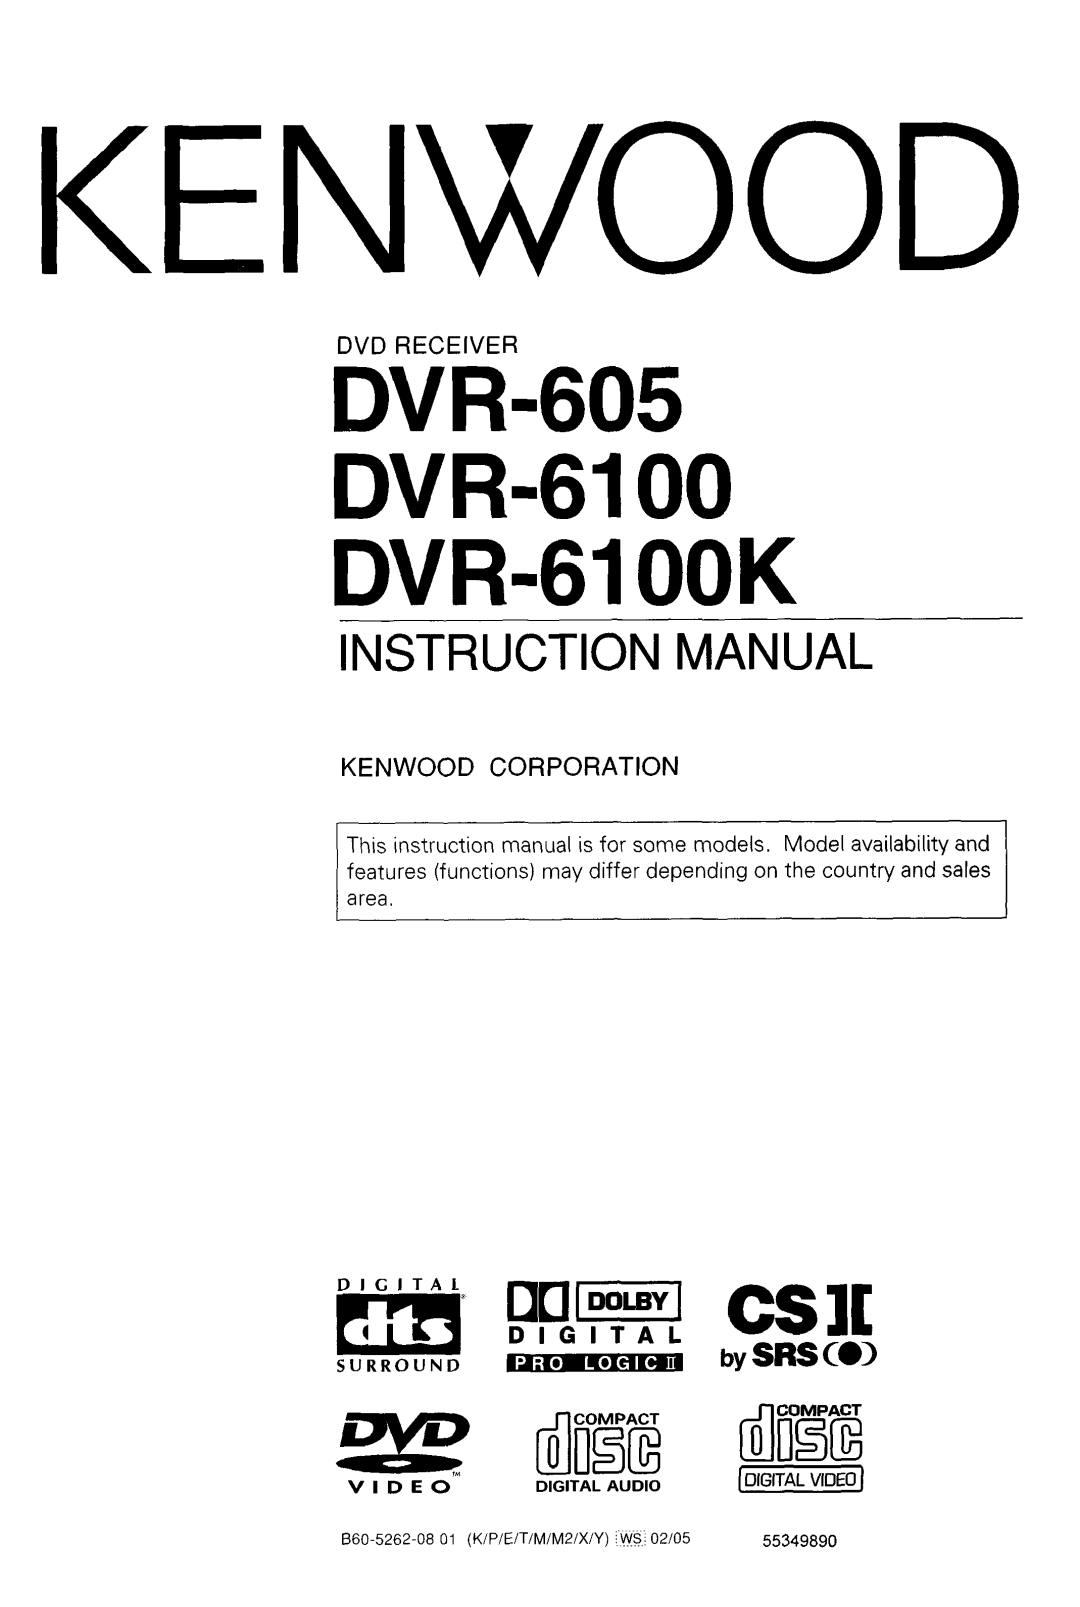 Kenwood instruction manual DVR-605 DVR-6100 DVR-61 OOK, Dvd Receiver, Kenwood Corporation, Instruction Manual 